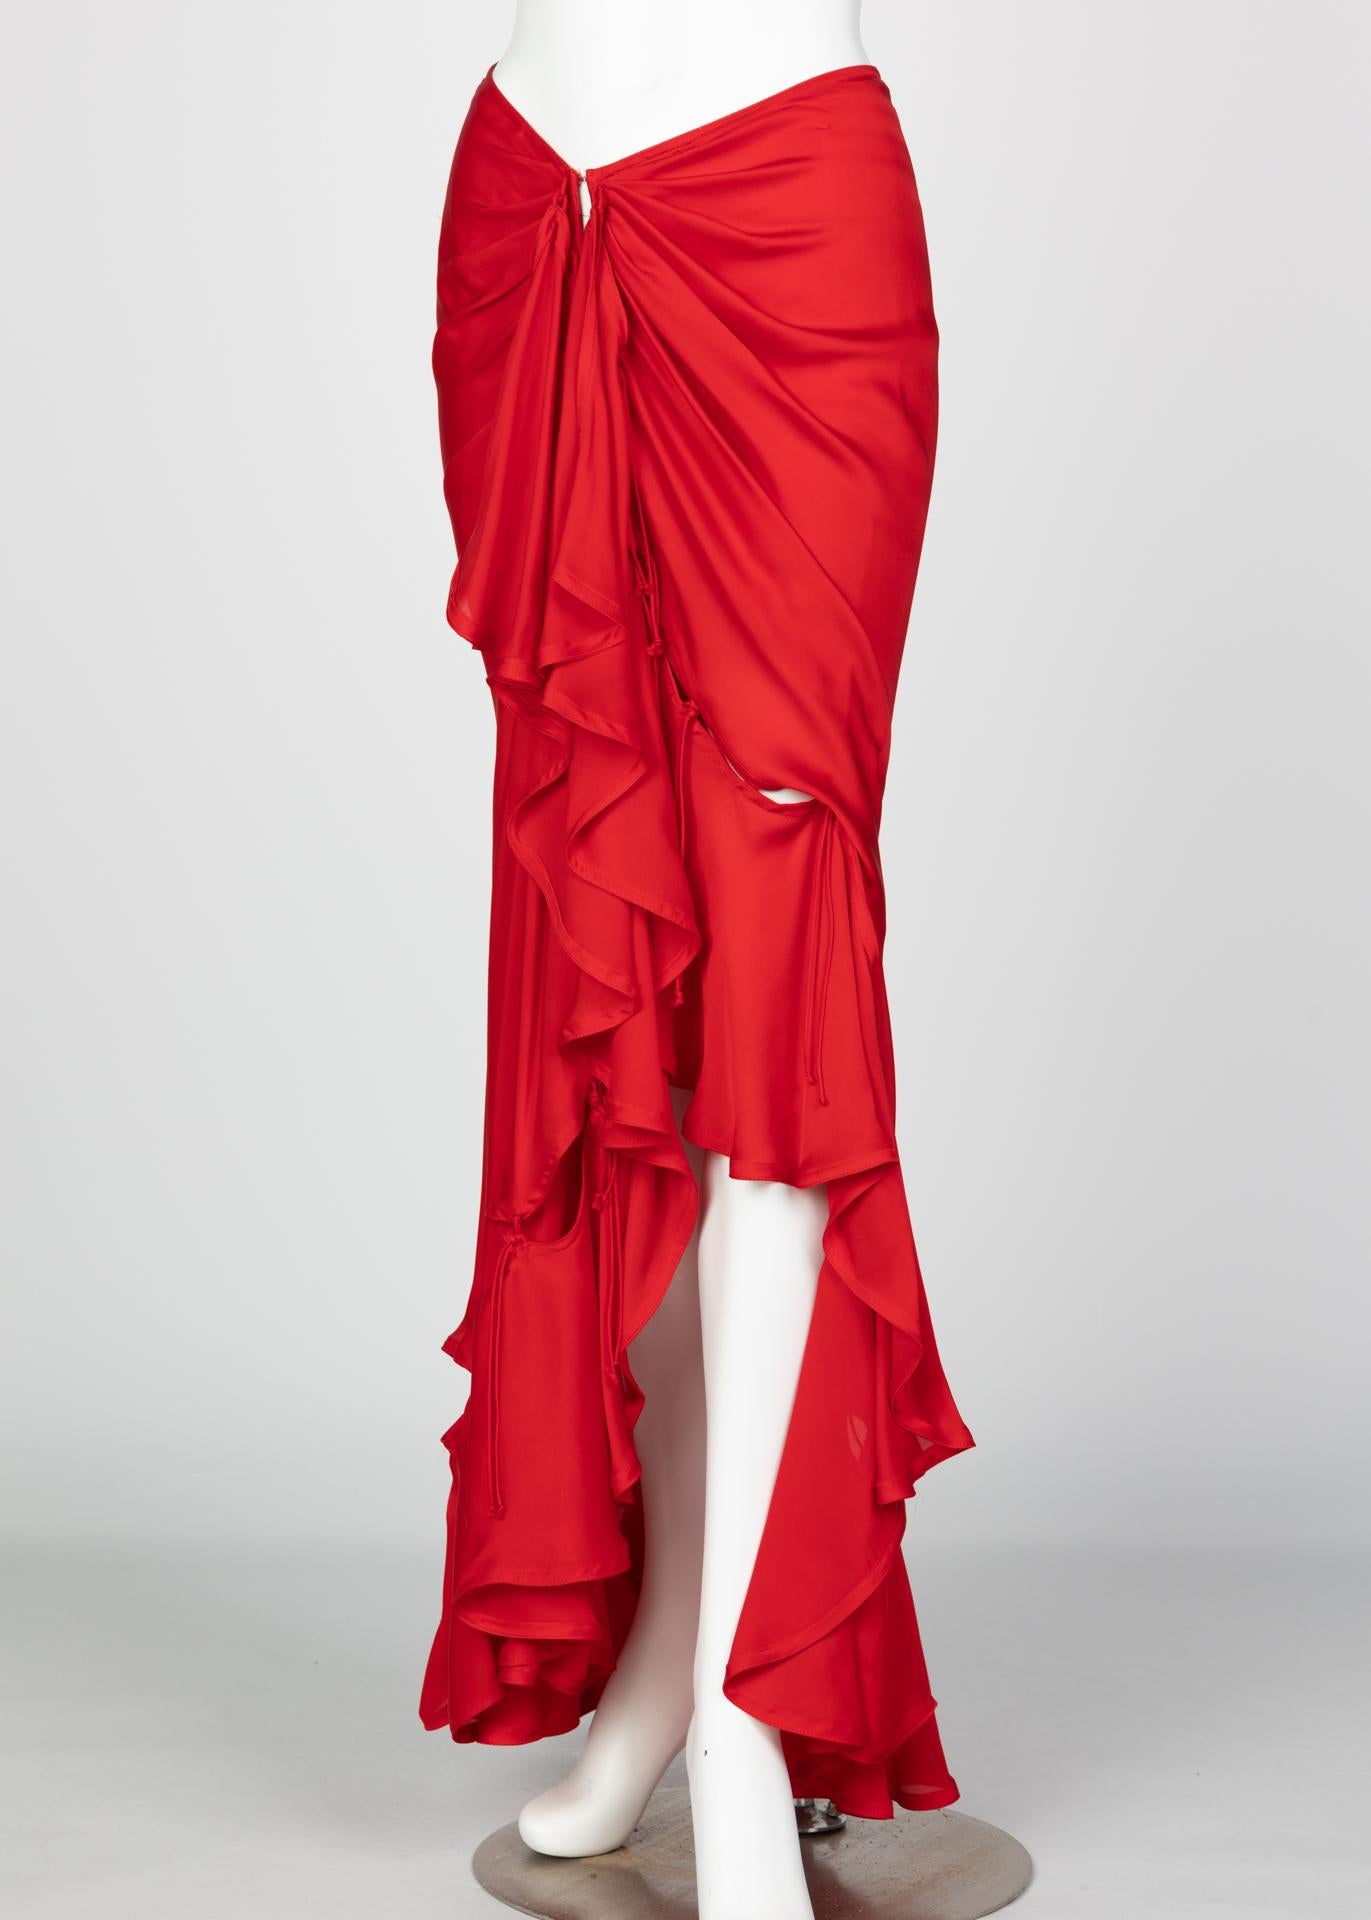 Yves Saint Laurent Tom Ford Red Silk Flamenco Skirt YSL, Runway 2003 6